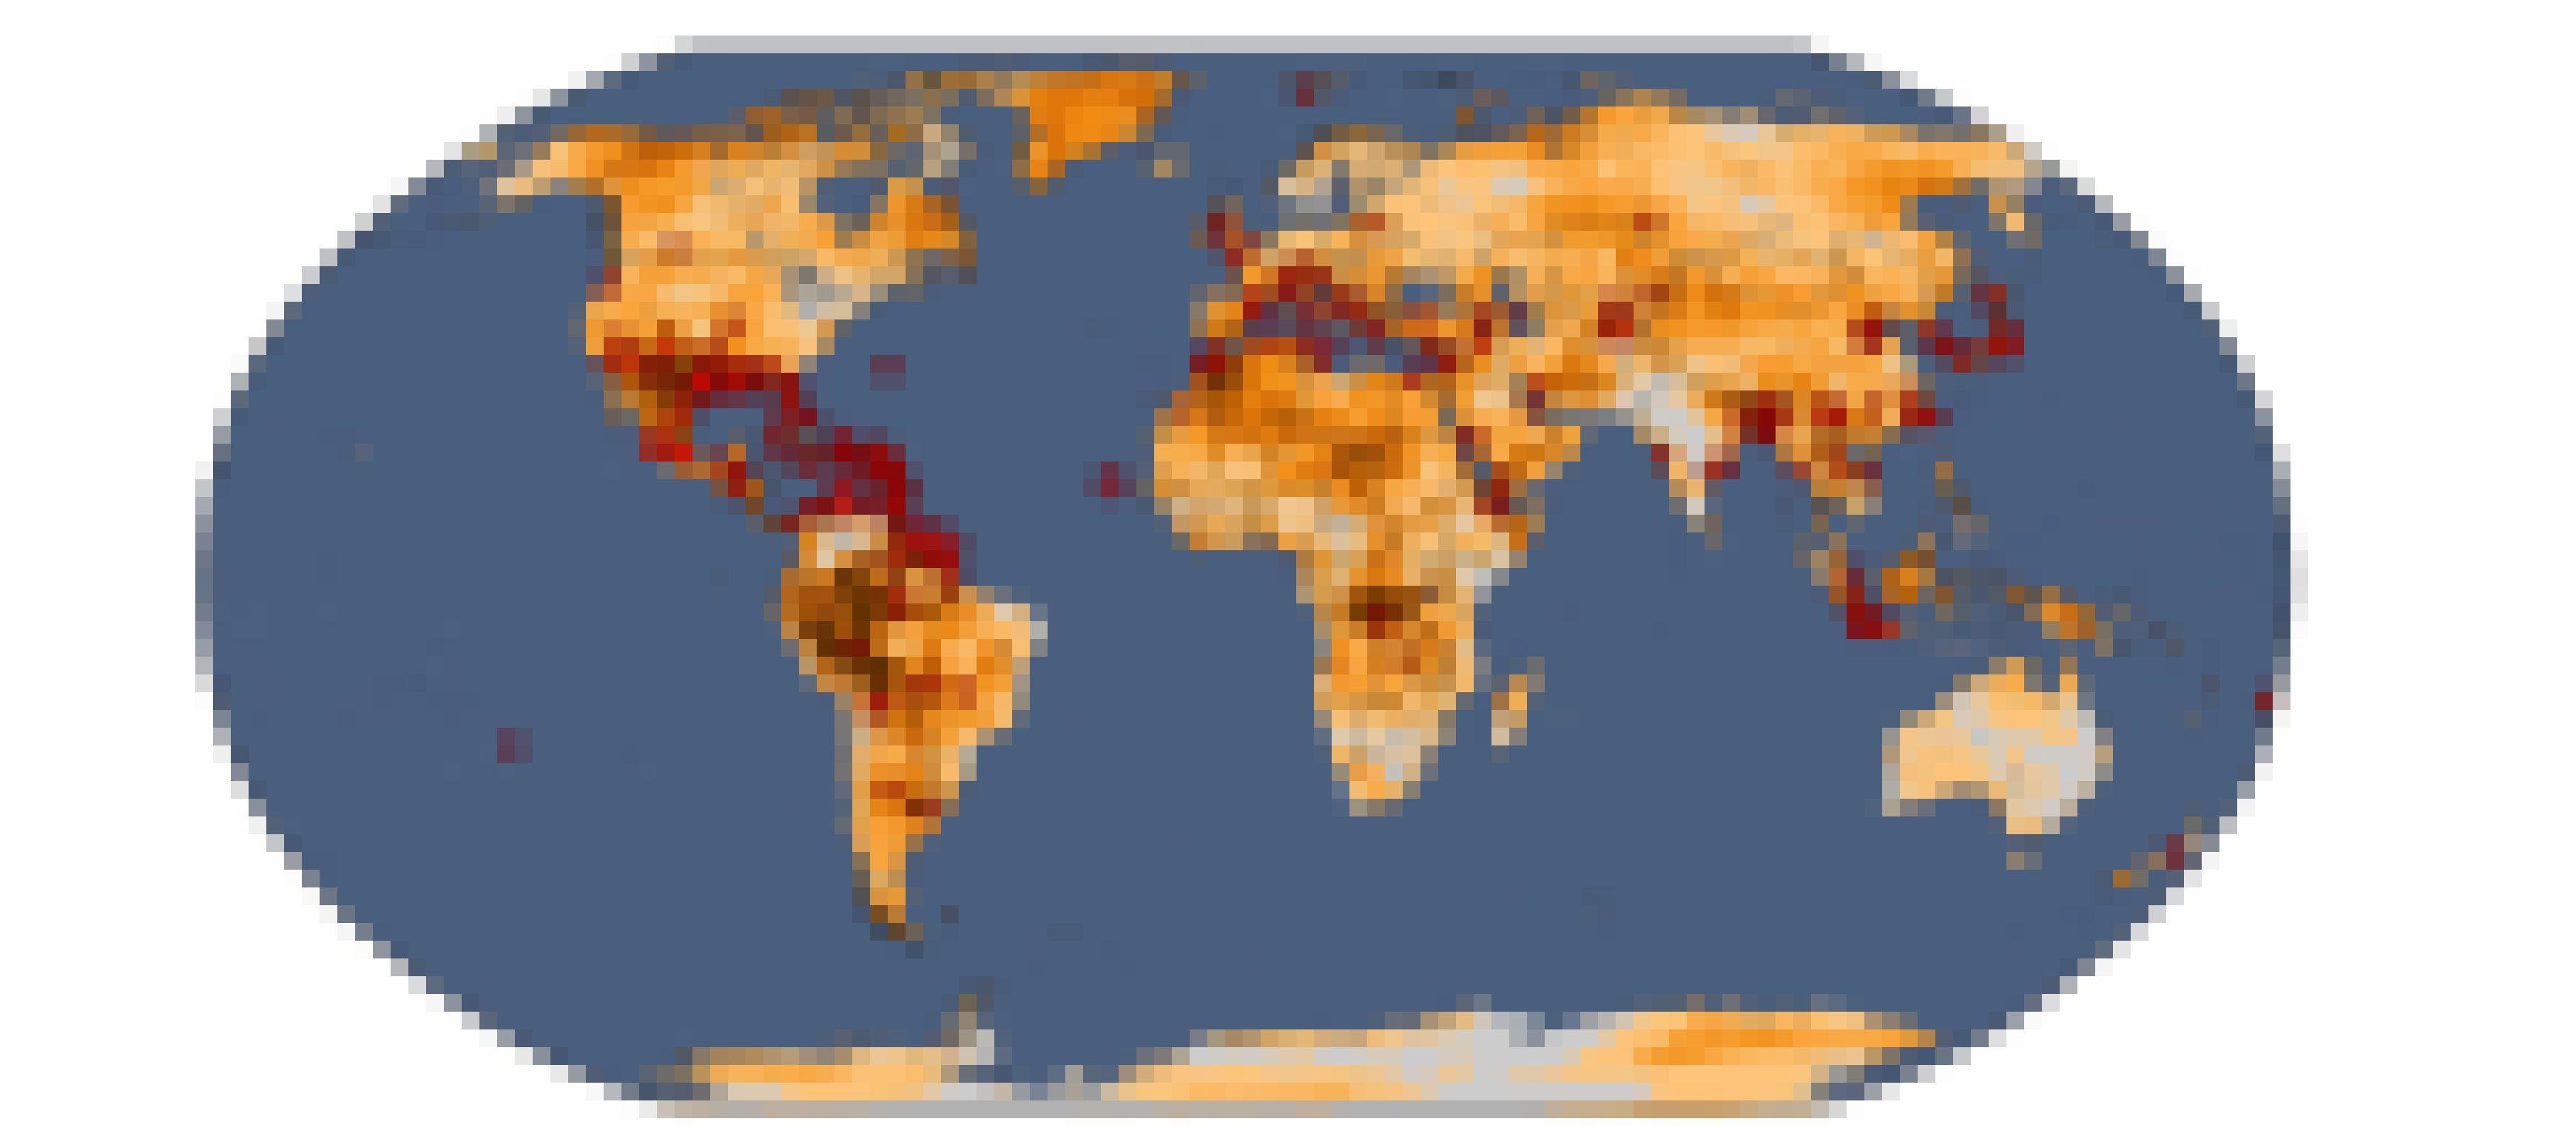 Eine Karte zeigt die Weltkarte mit Städten, die besonders betroffen von Hitzwellen waren.